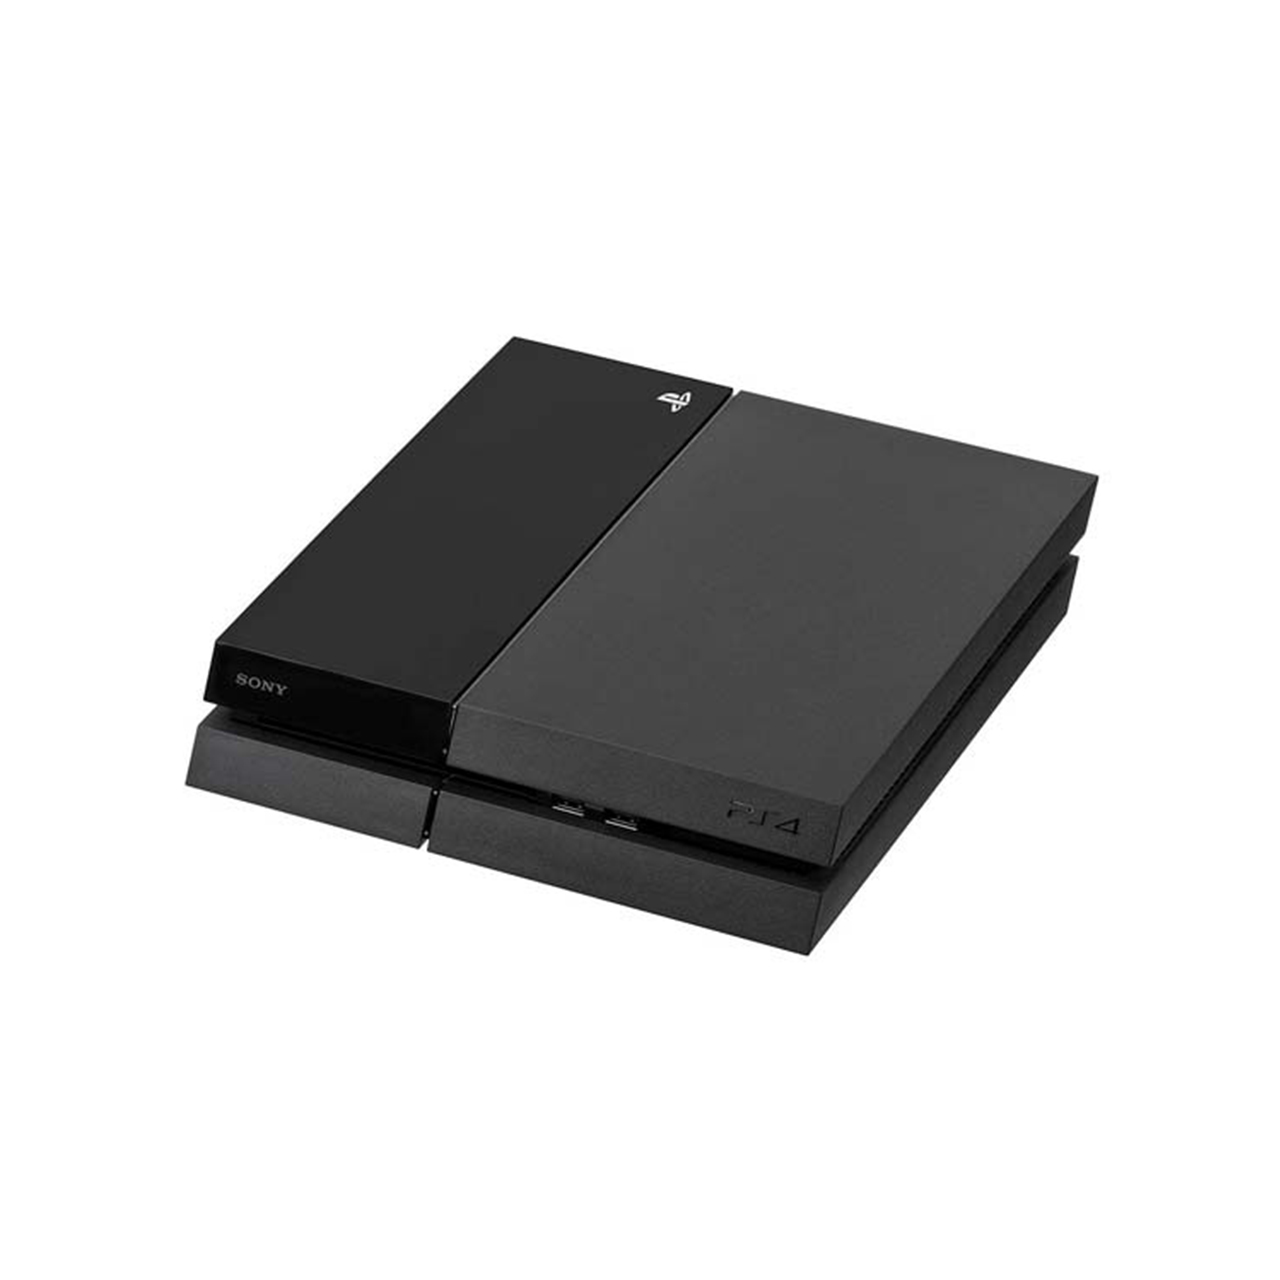 کنسول بازی سونی مدل Playstation 4 Fat ظرفیت 1 ترابایت همراه با دودسته – استوک – همراه بازی